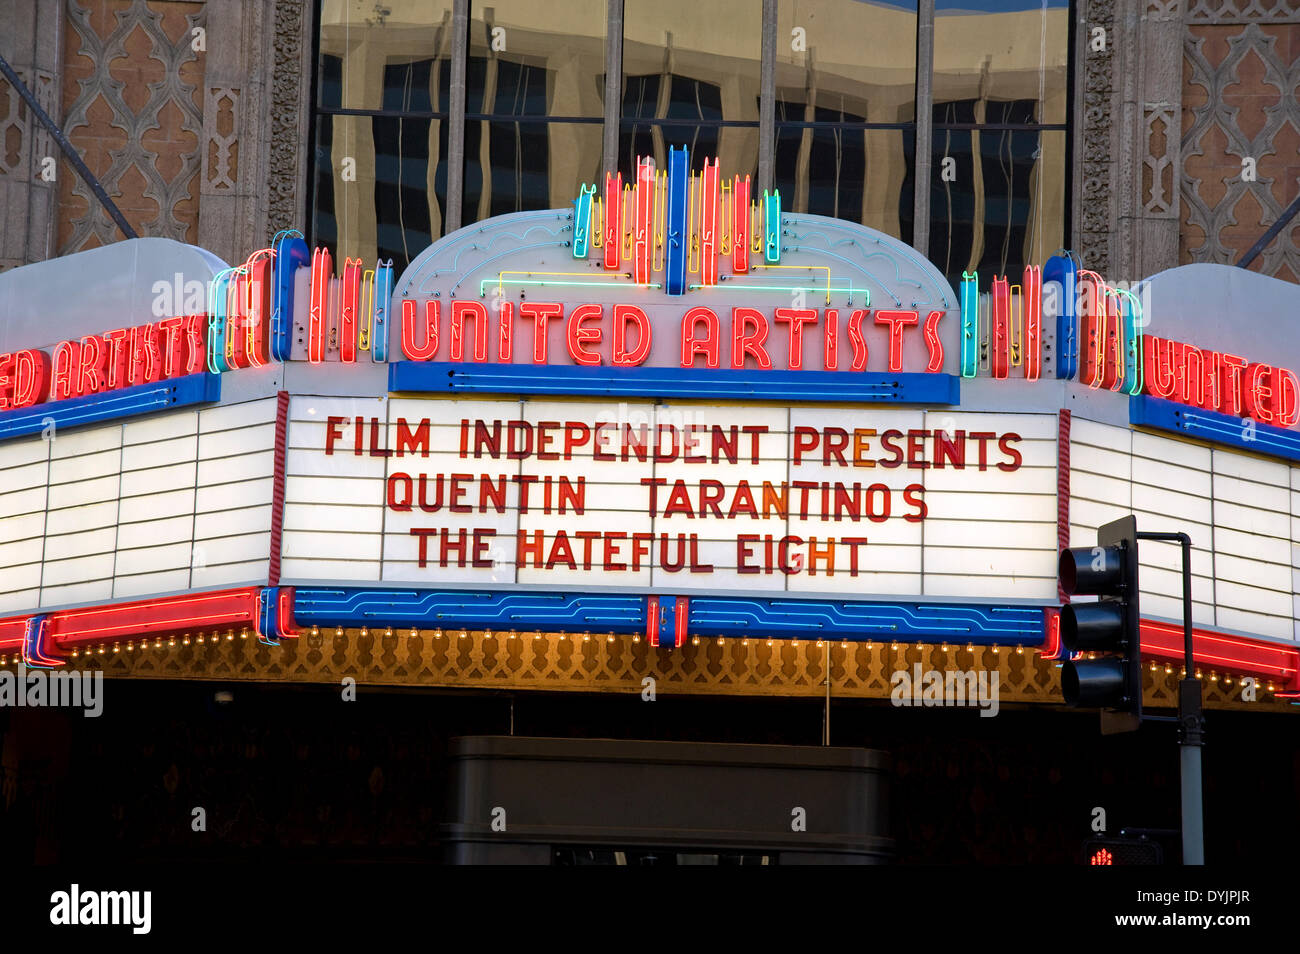 Los Angeles, USA. Apr 19, 2014. 20 avril 2014 : manifestation spéciale pour Quentin Tarantino 'l'odieuse huit' dans le centre-ville de Los Angeles United Artist Theatre. Crédit : Robert Landau/Alamy Live News Banque D'Images